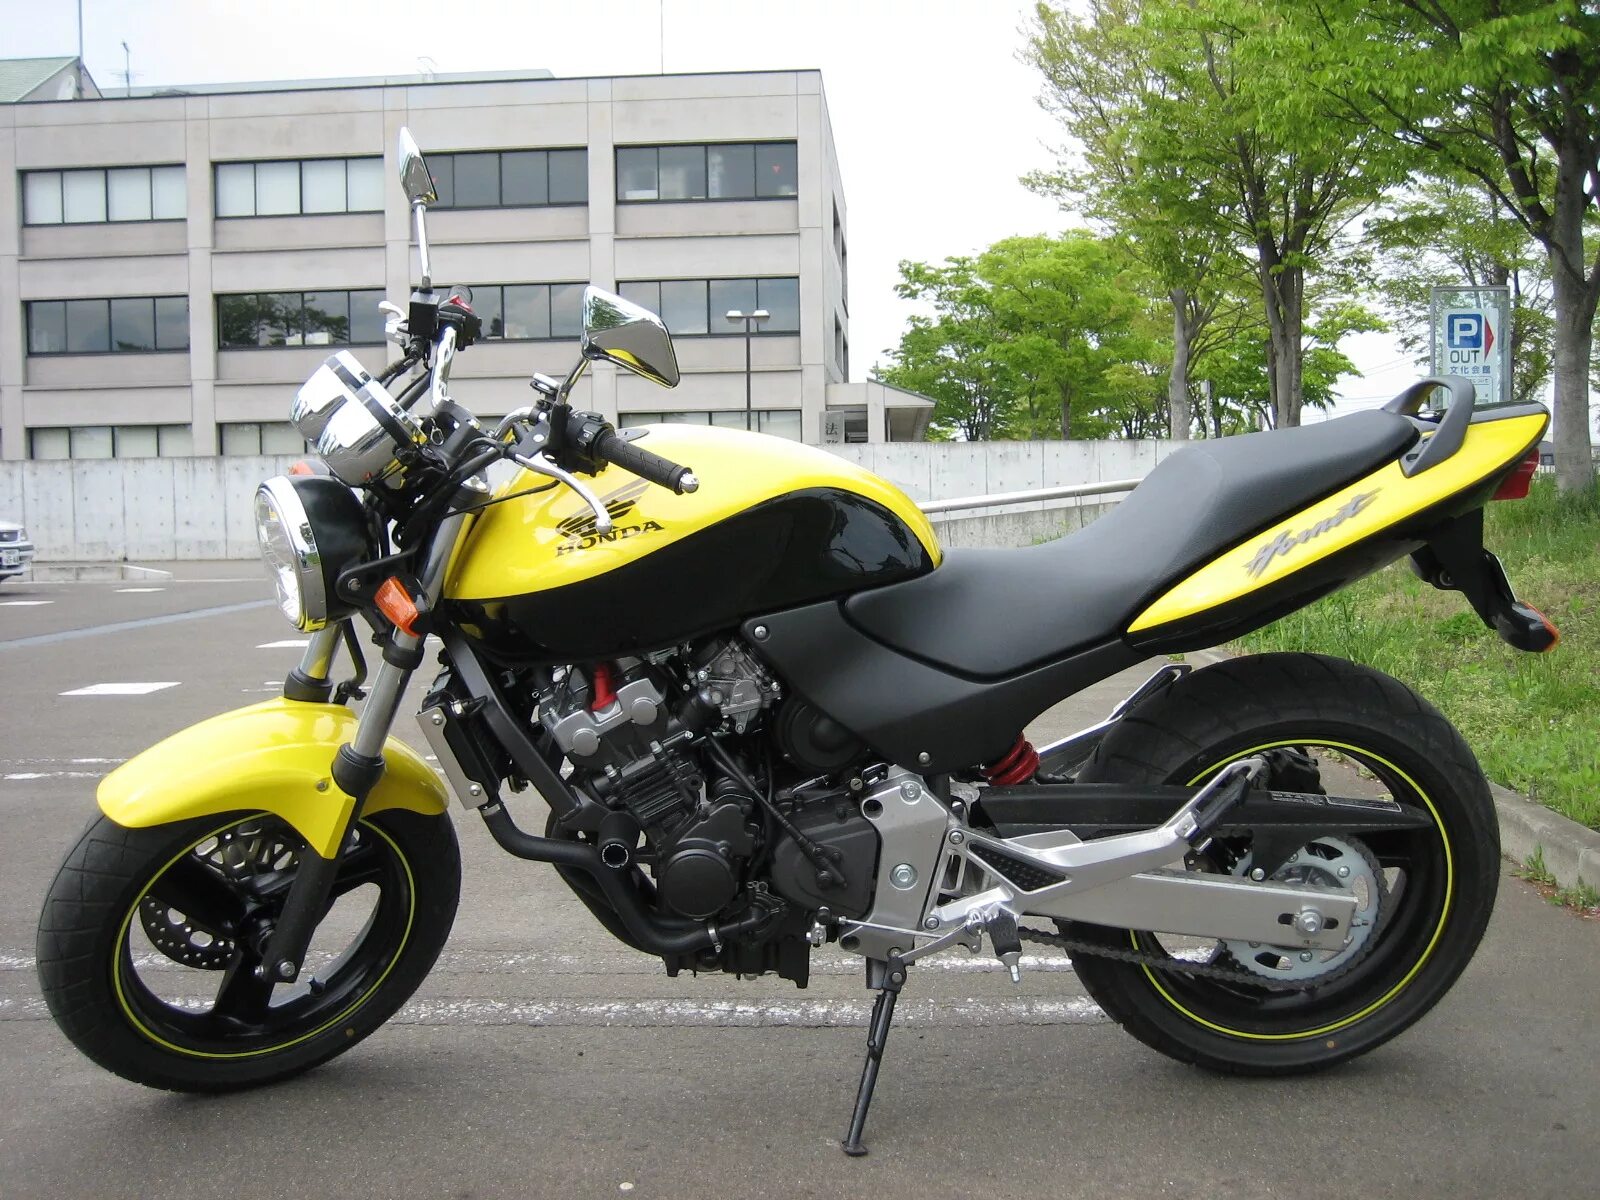 Honda CB 250 Hornet. Honda мотоцикл 250 Hornet. Хонда сб 250 Хорнет. Honda Hornet 250f. Мотоцикл honda hornet